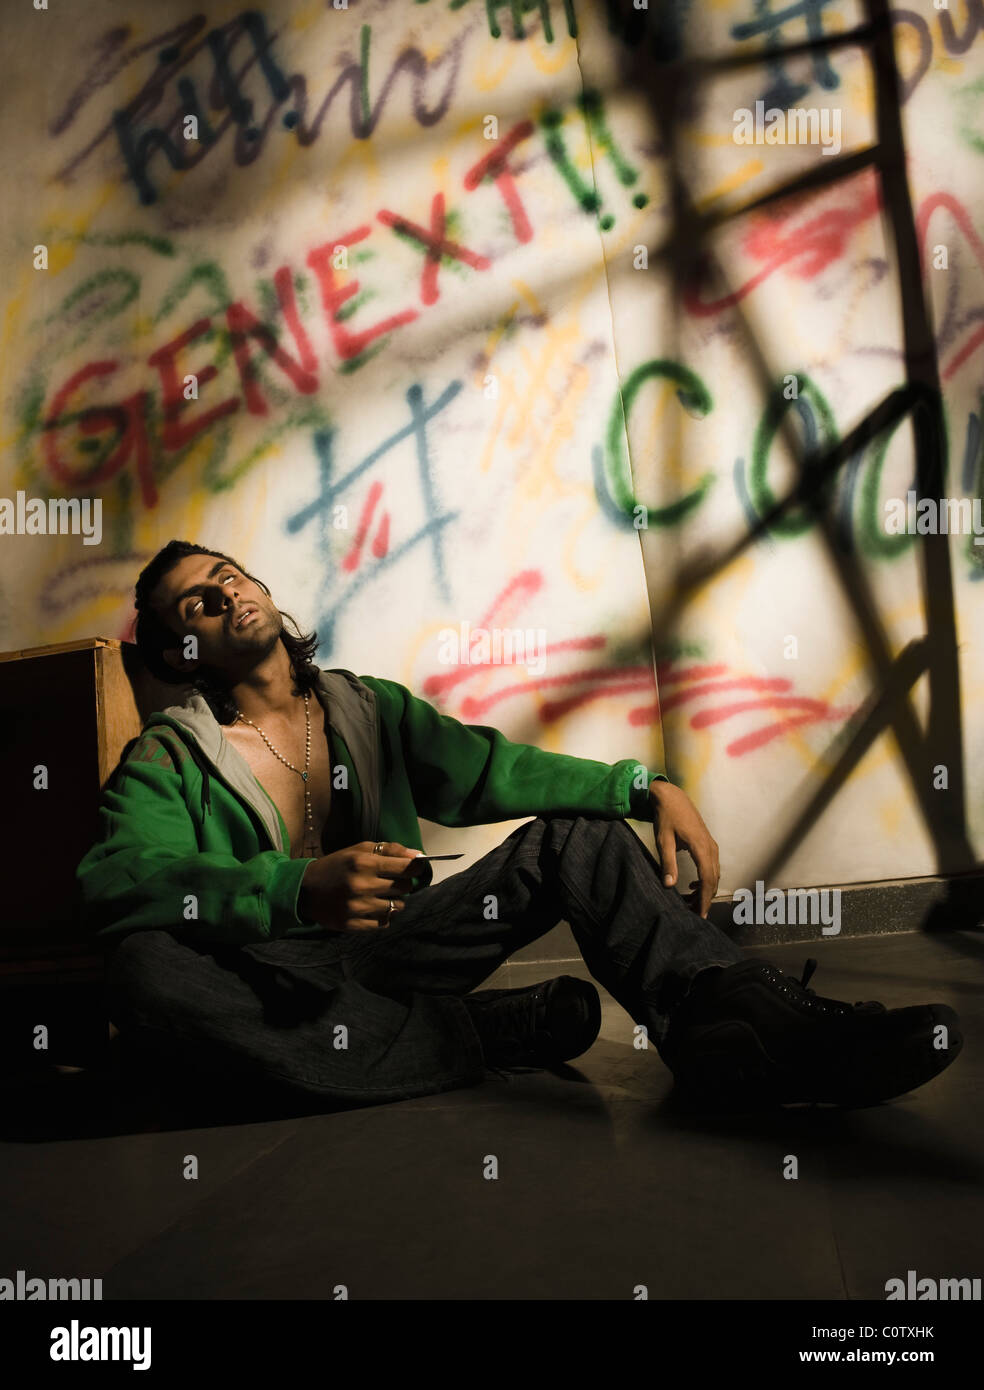 Toxicomane homme assis en face d'un mur couvert de graffitis Banque D'Images